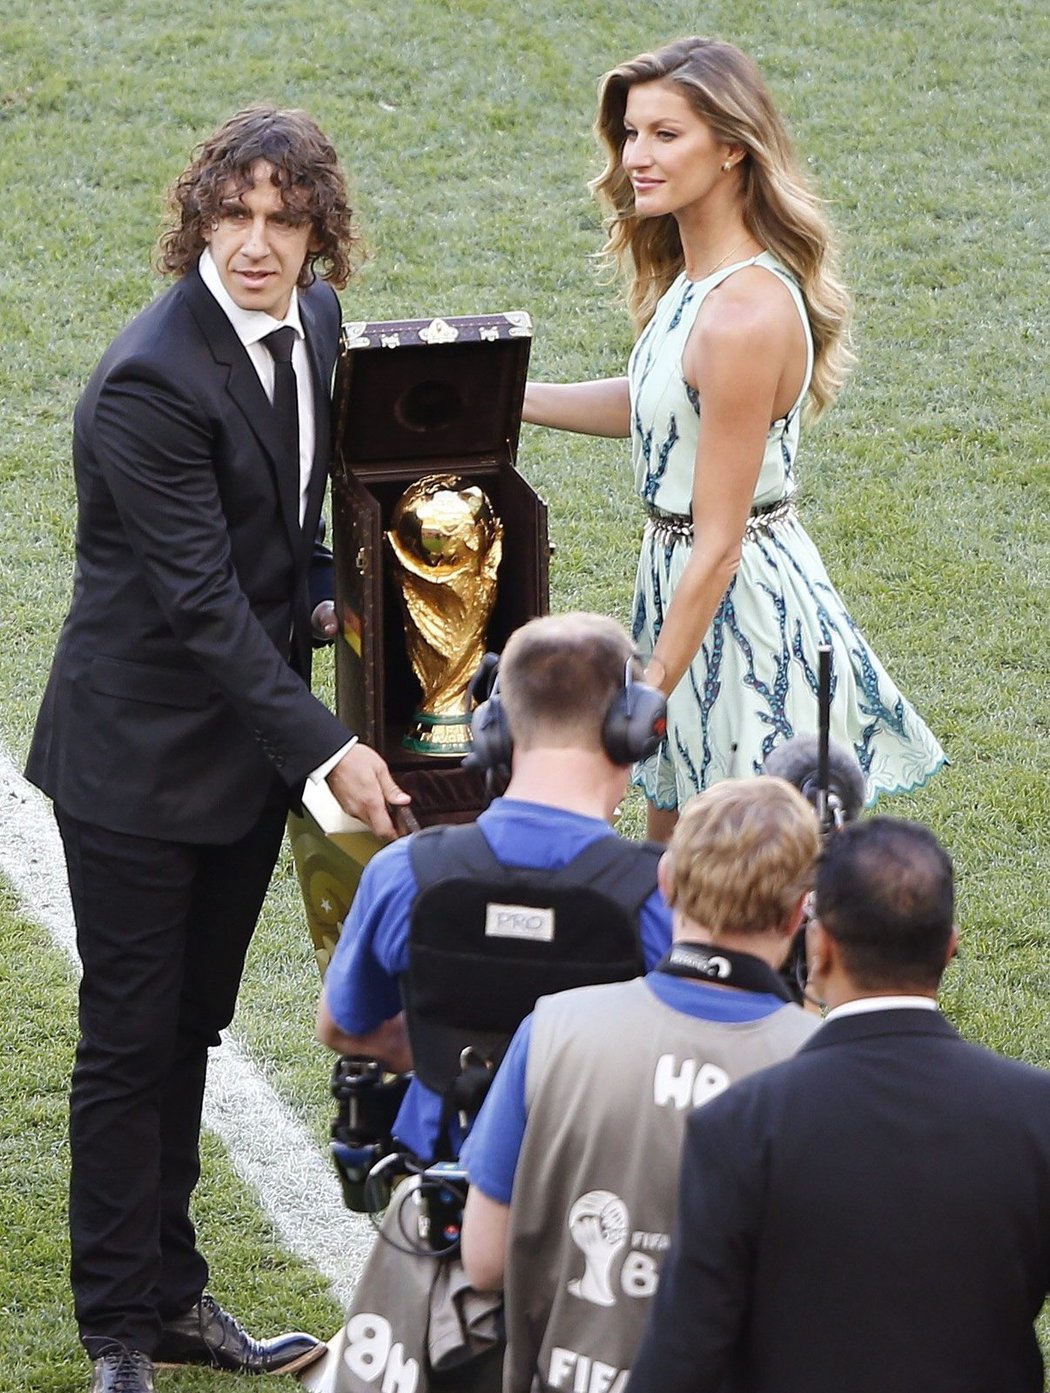 Trofej pro mistry světa představil fotbalista Carles Puyol a brazilská modelka Gisele Bündchen